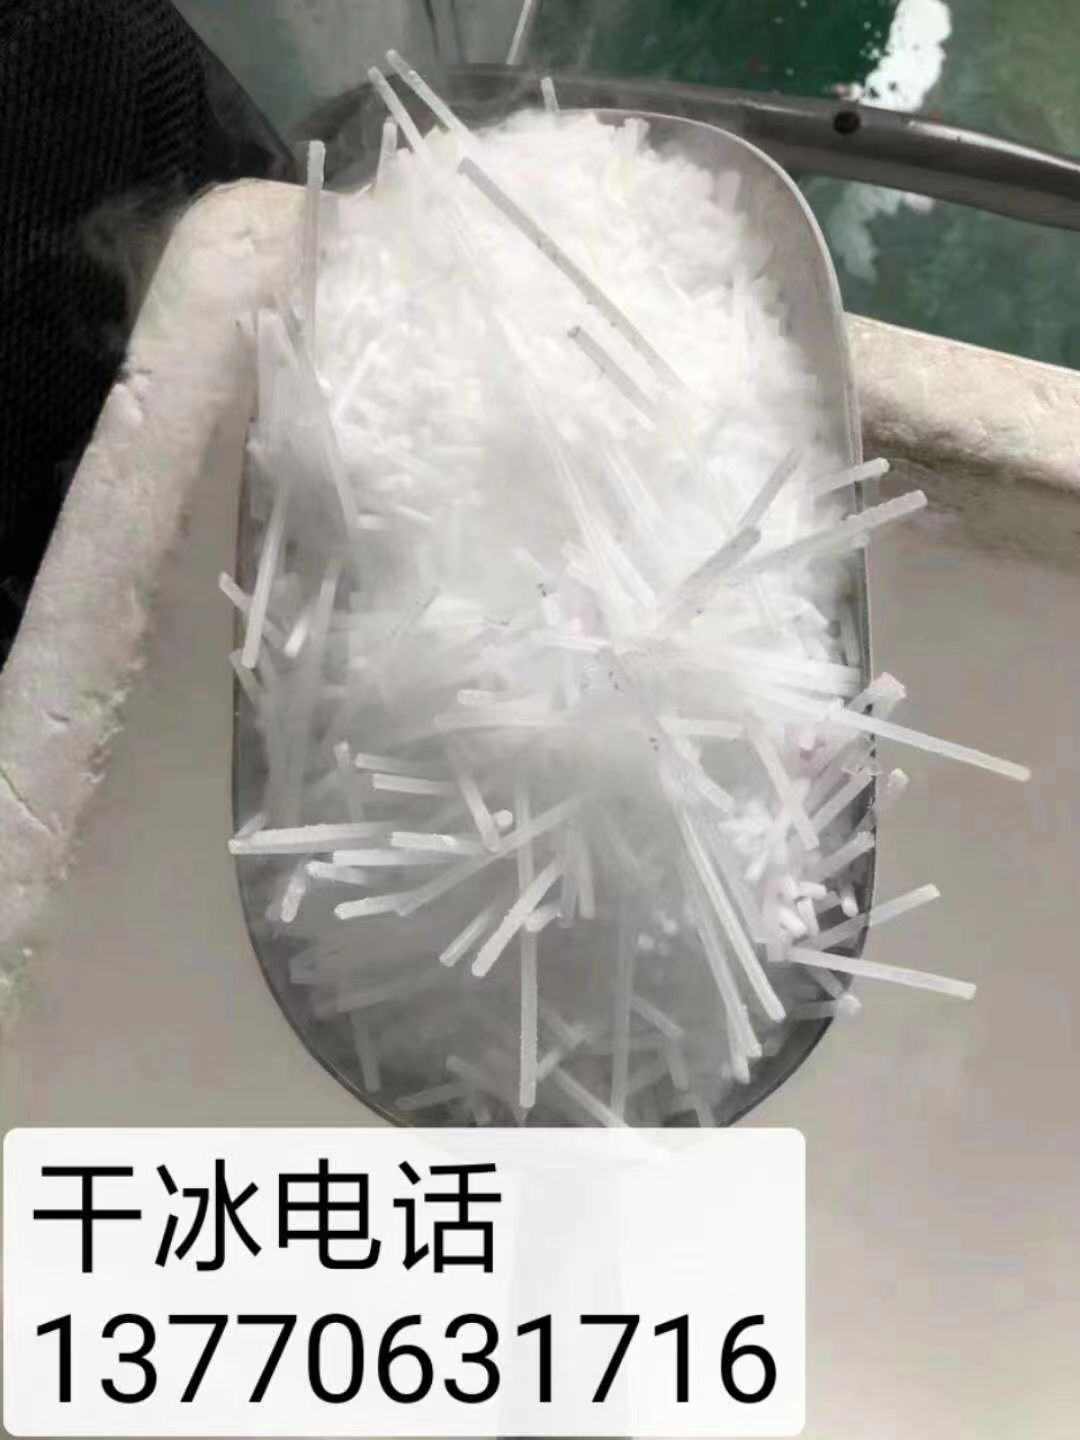 南京干冰 南京干冰销售 南京��冰供应 南京干冰生产 干冰制造